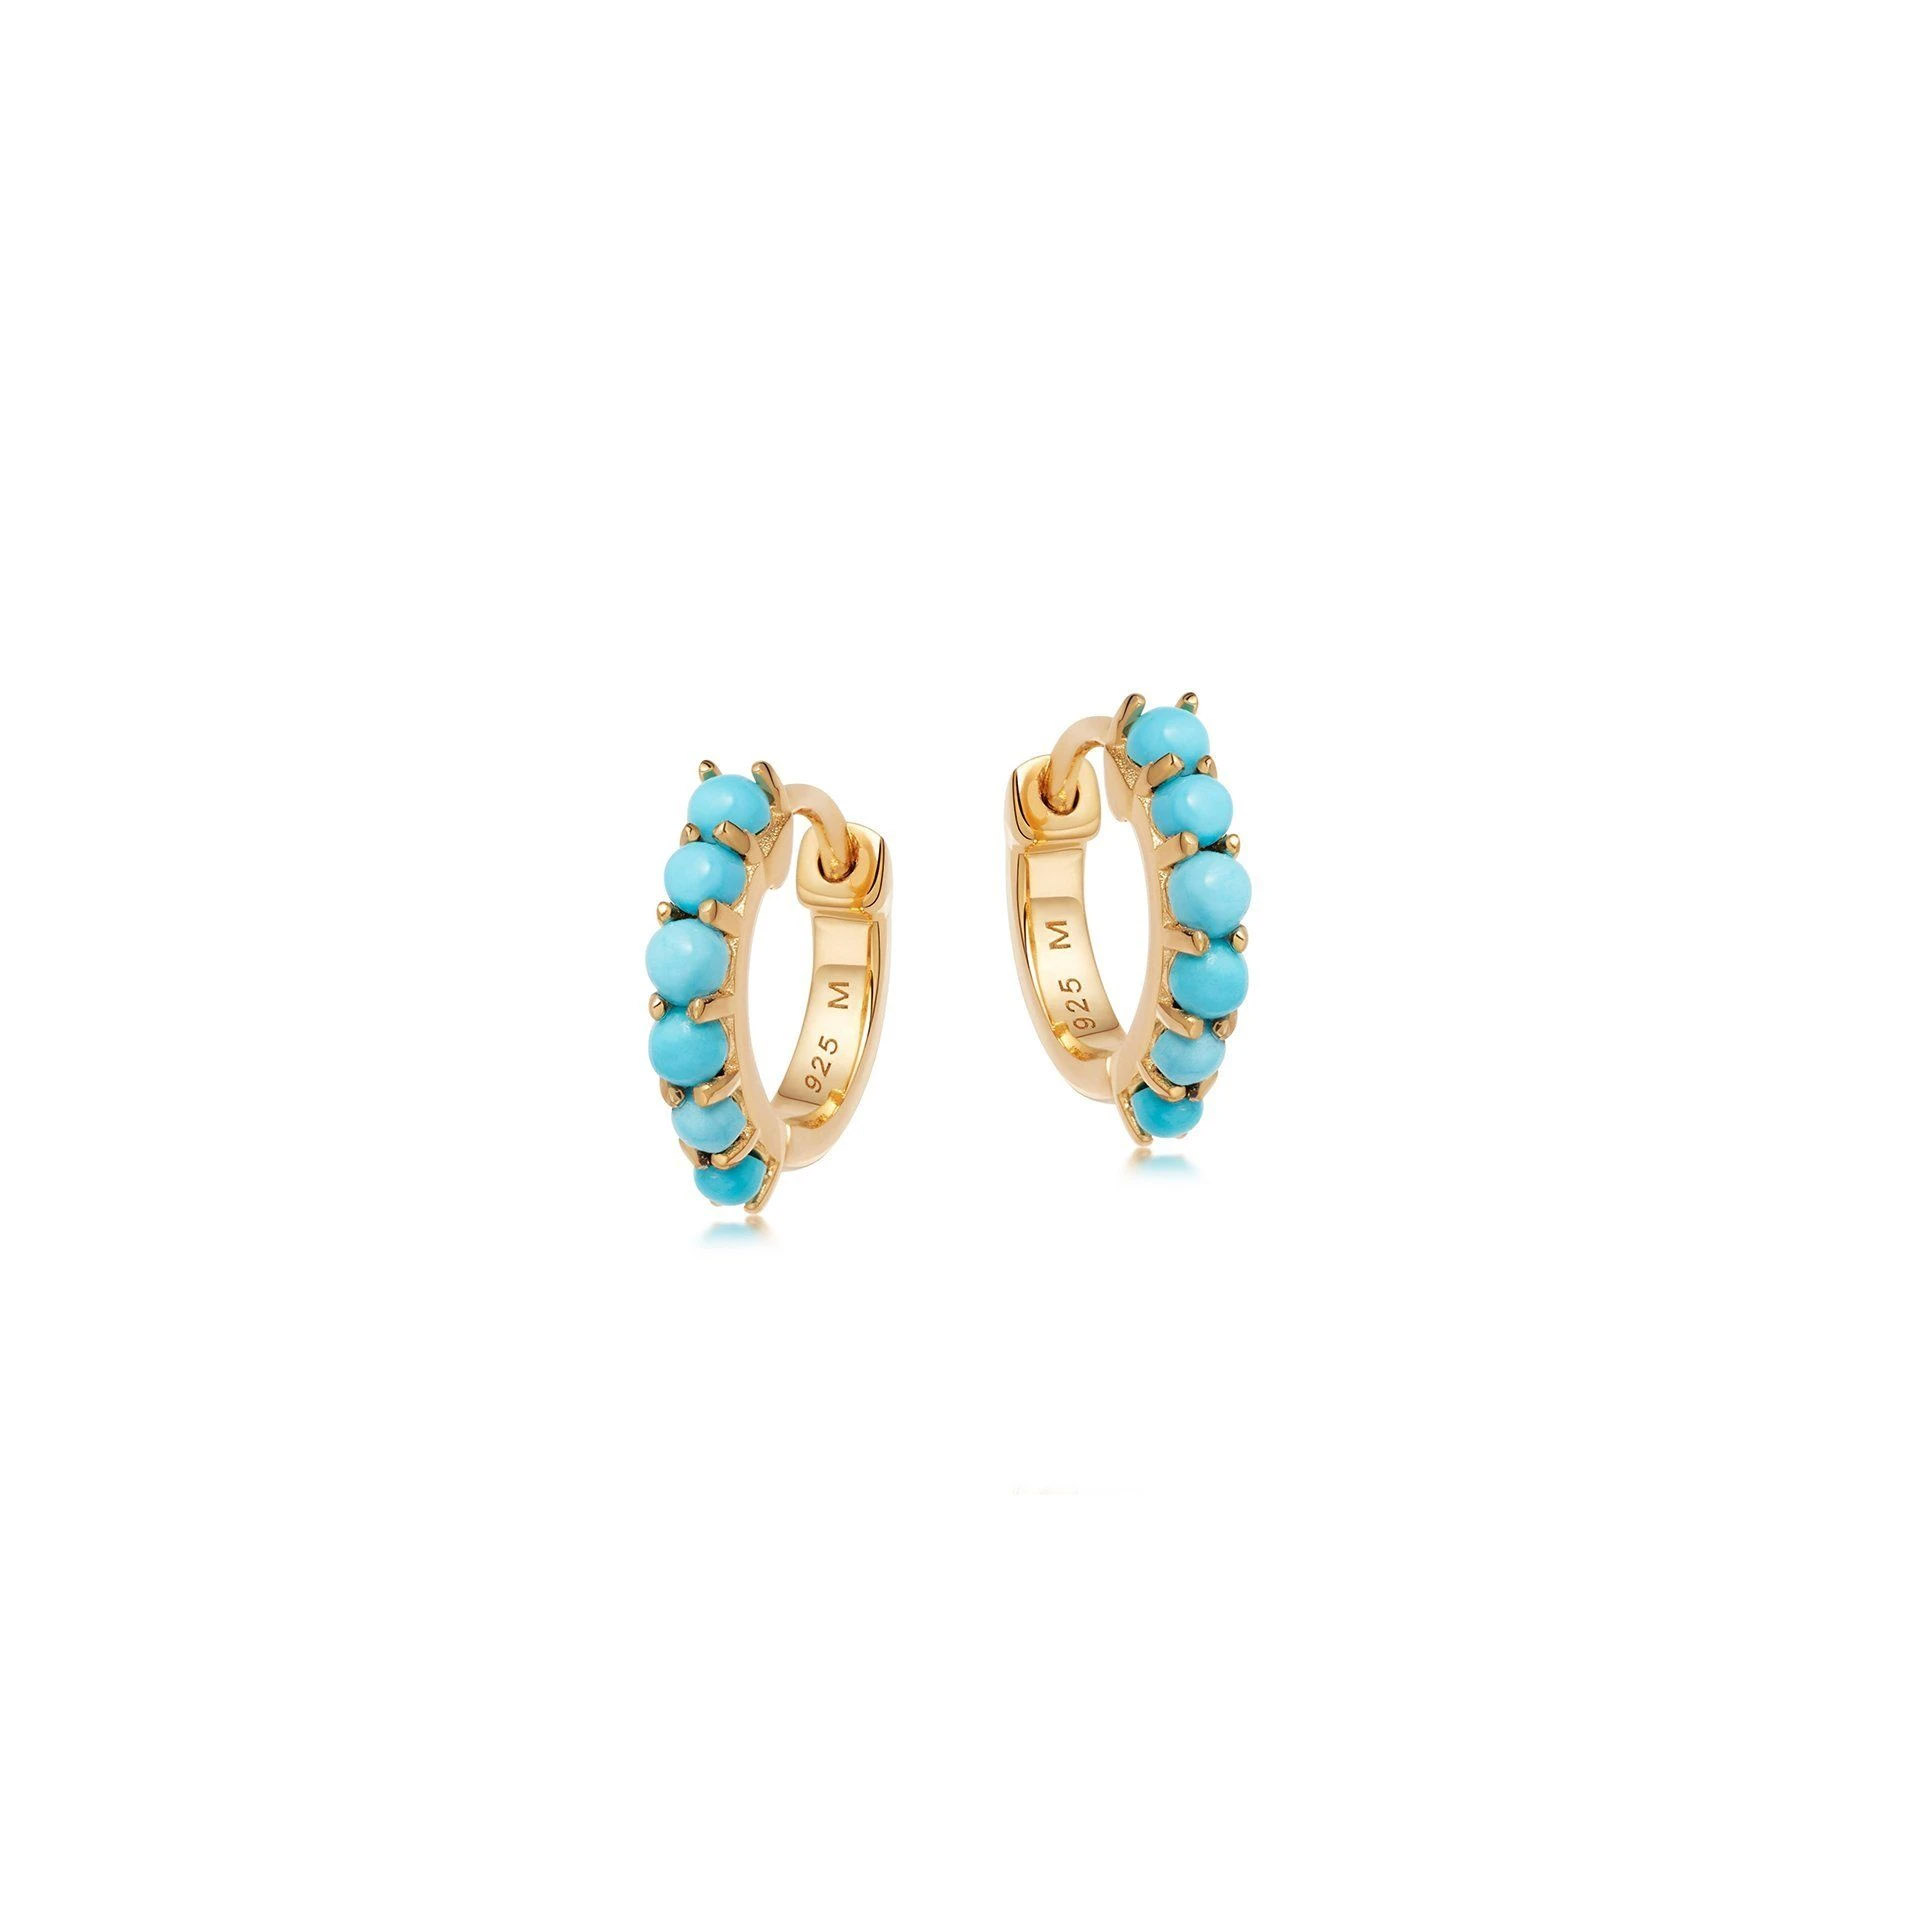 Wholesale OEM/ODM Jewelry Custom women jewelry earrings in 18k gold vermeil on 925 sterling silver OEM